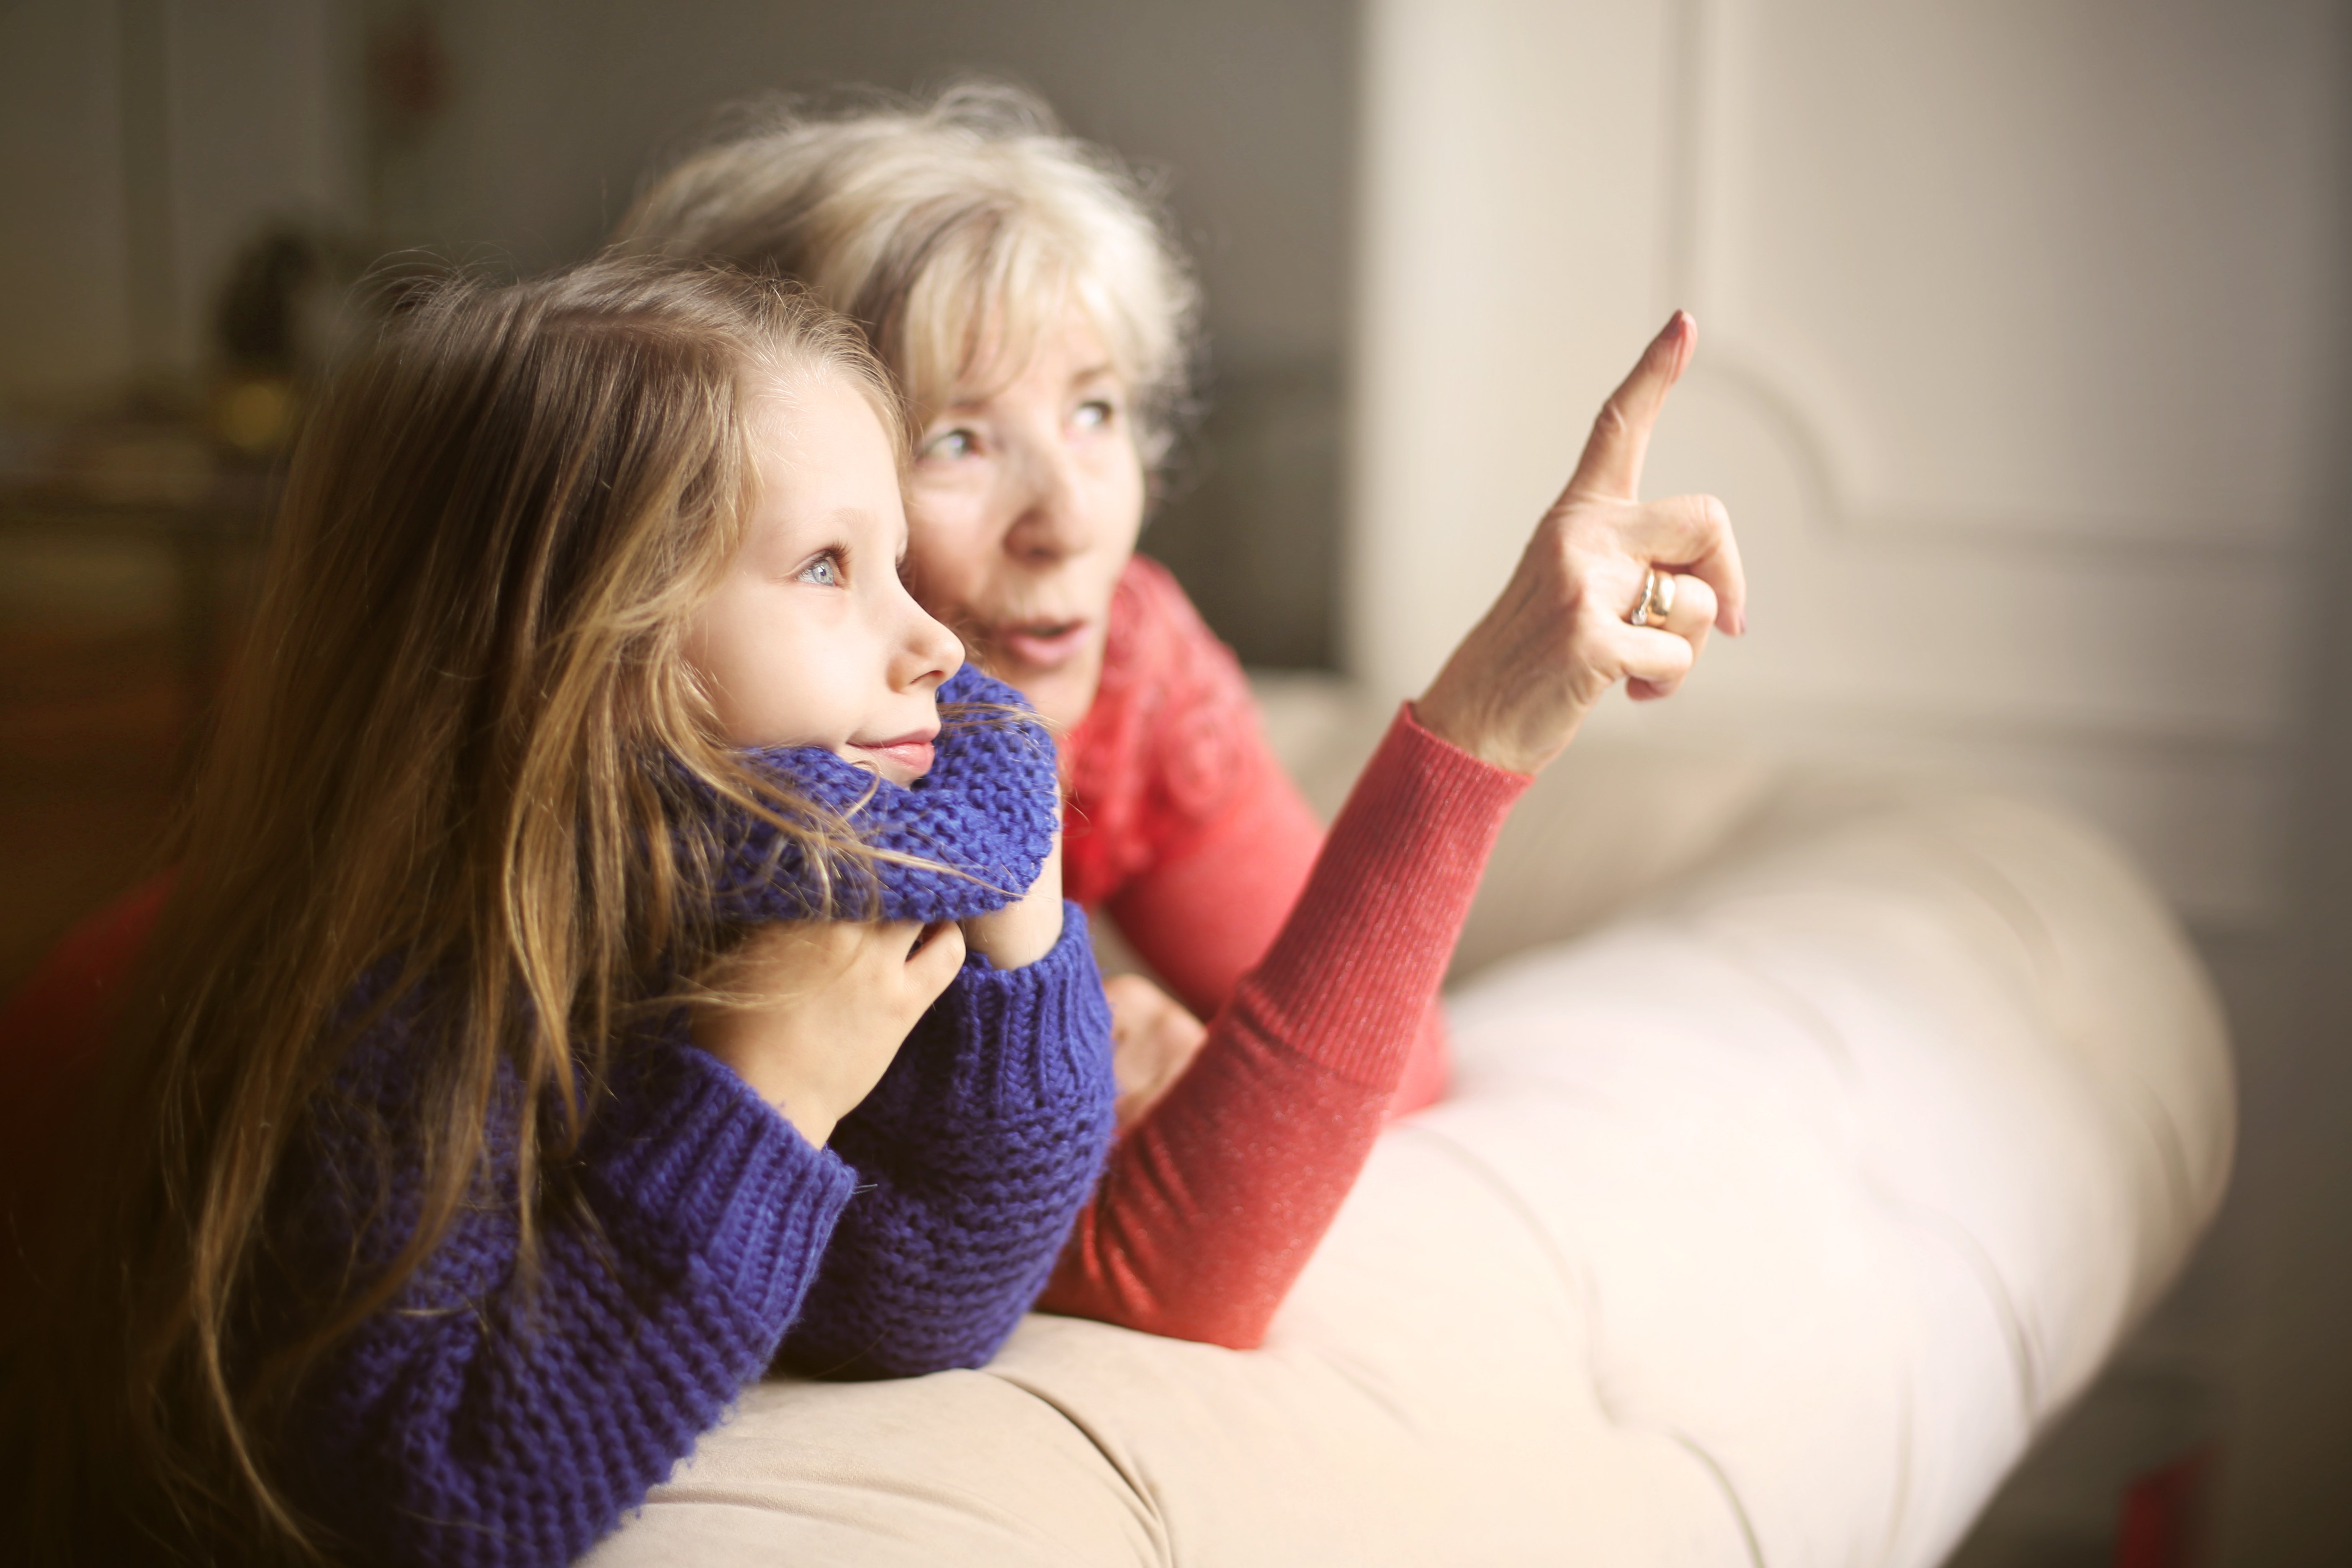 A grandmother and her grandchild, spending precious time together | Photo: Shutterstock.com